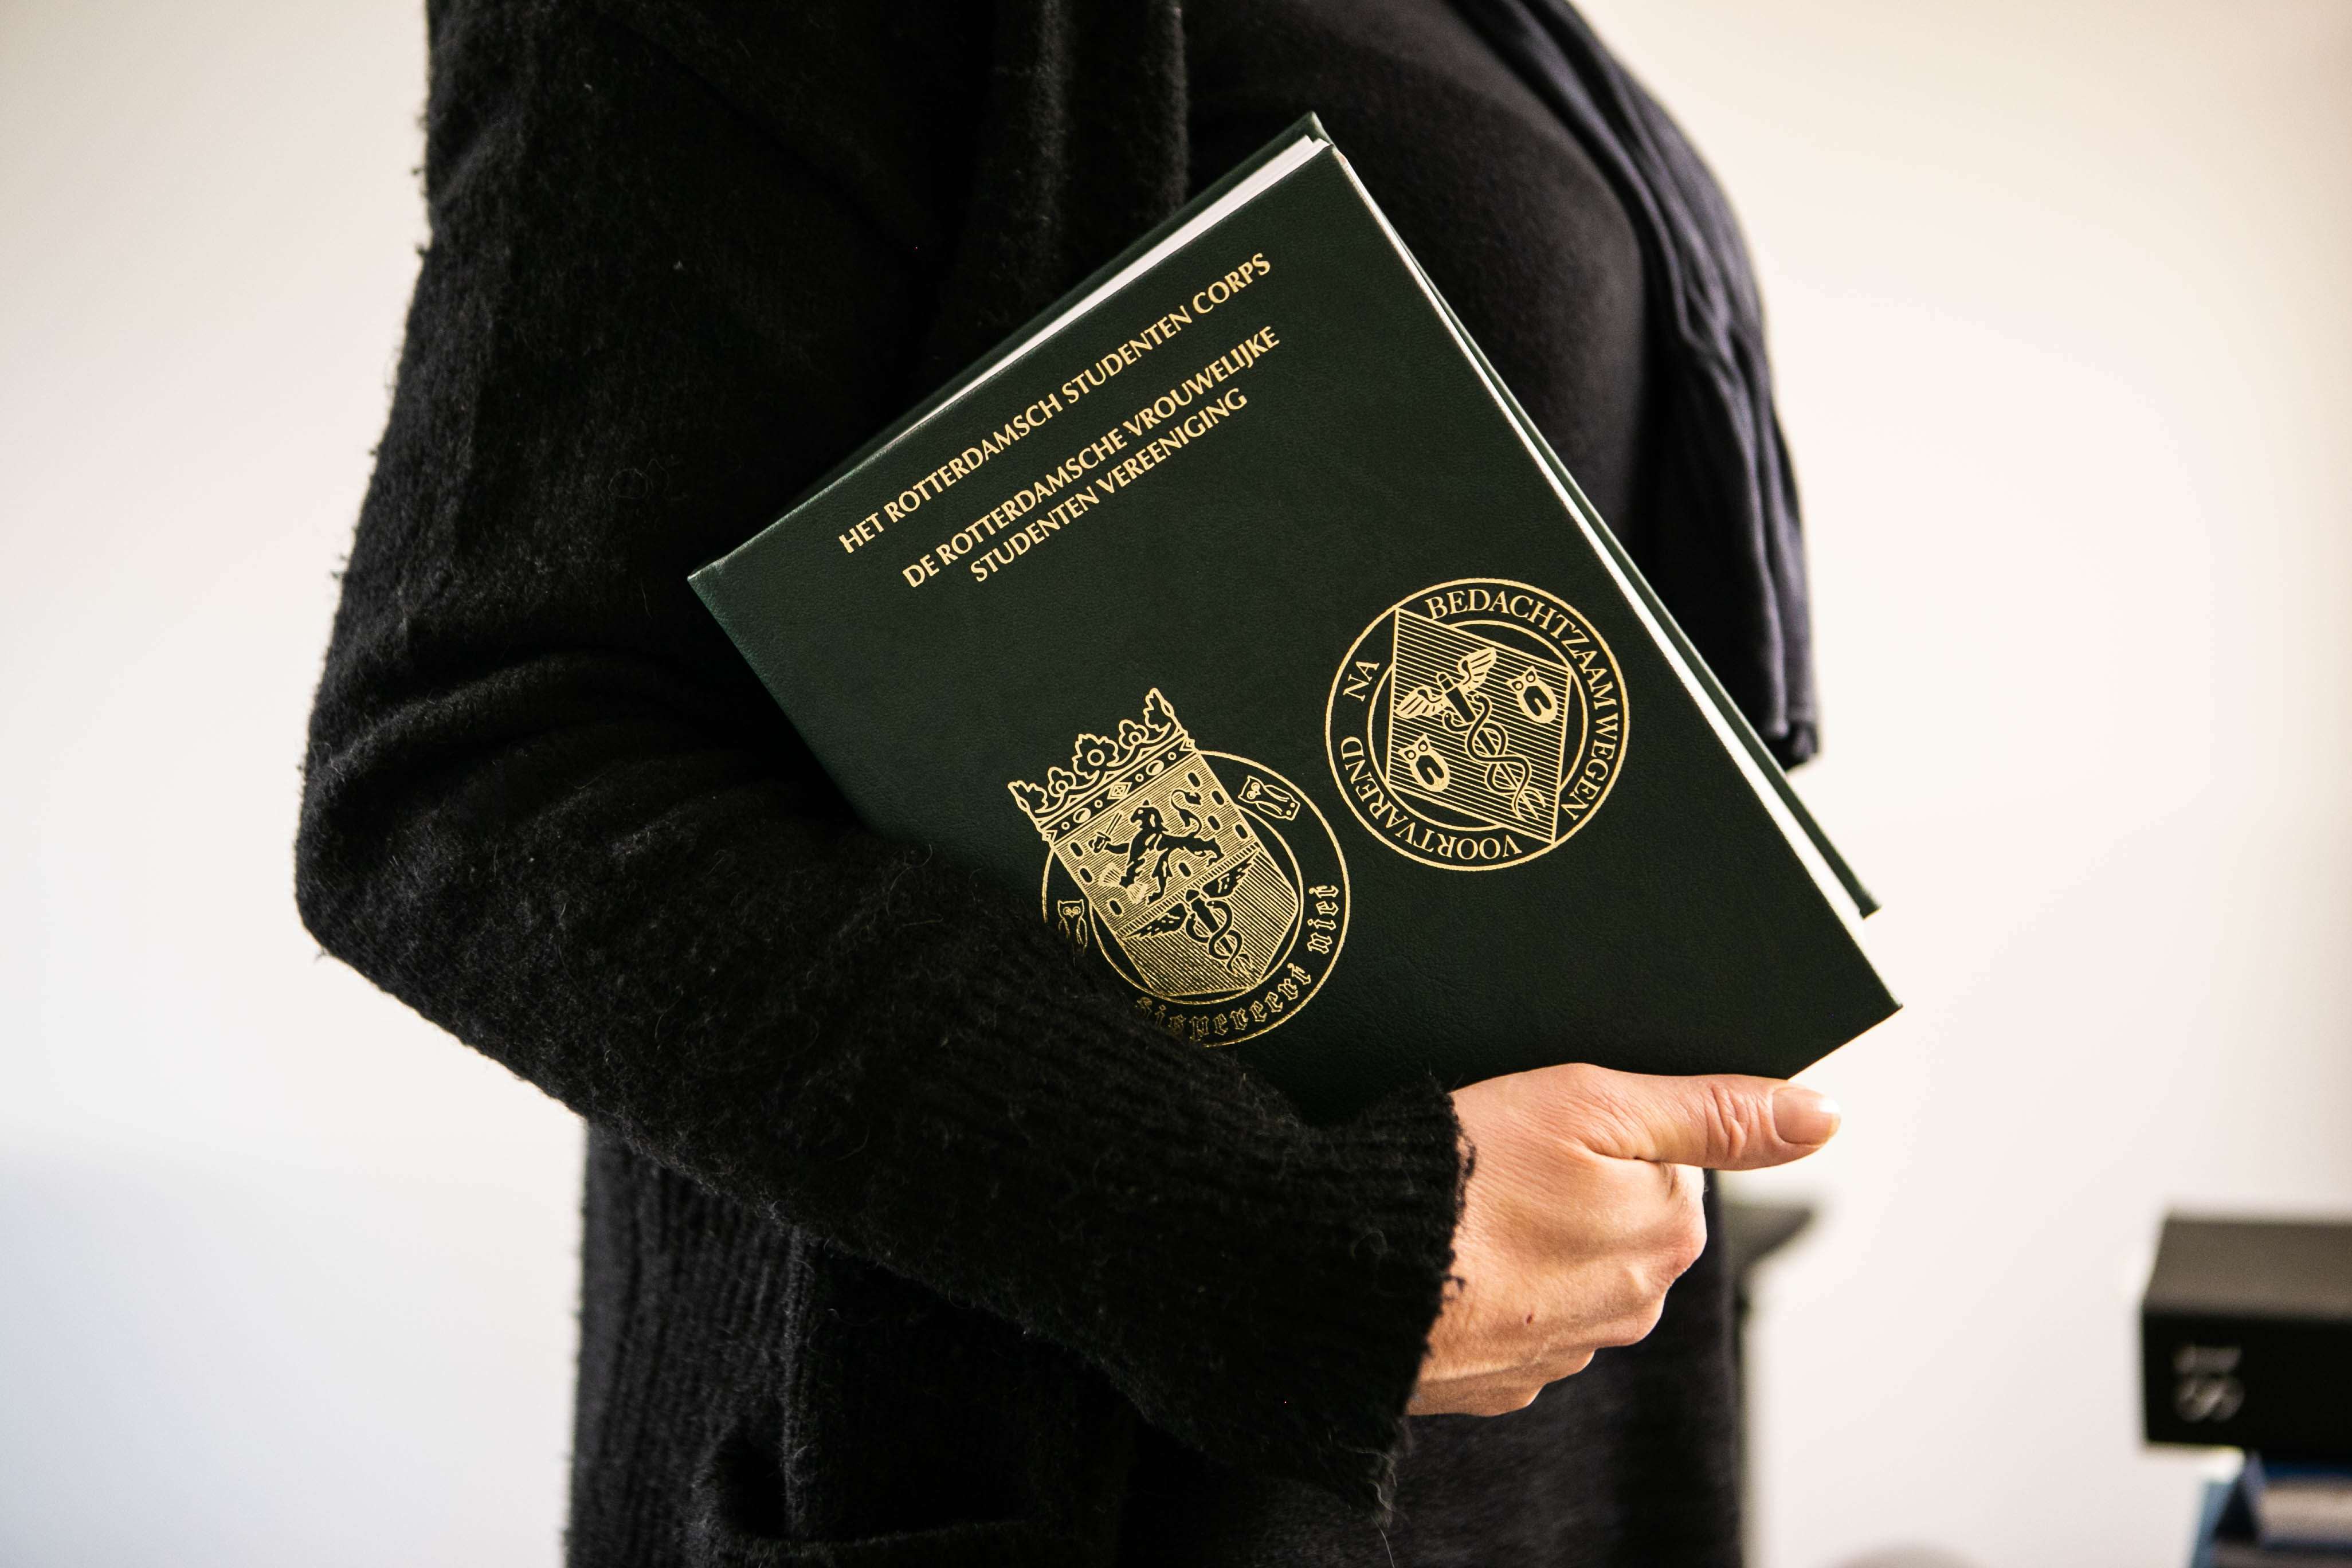 PerfectBook almanak Rotterdamsch Studenten Corps RSC paragina kunstleer foliedruk wet&view inkt